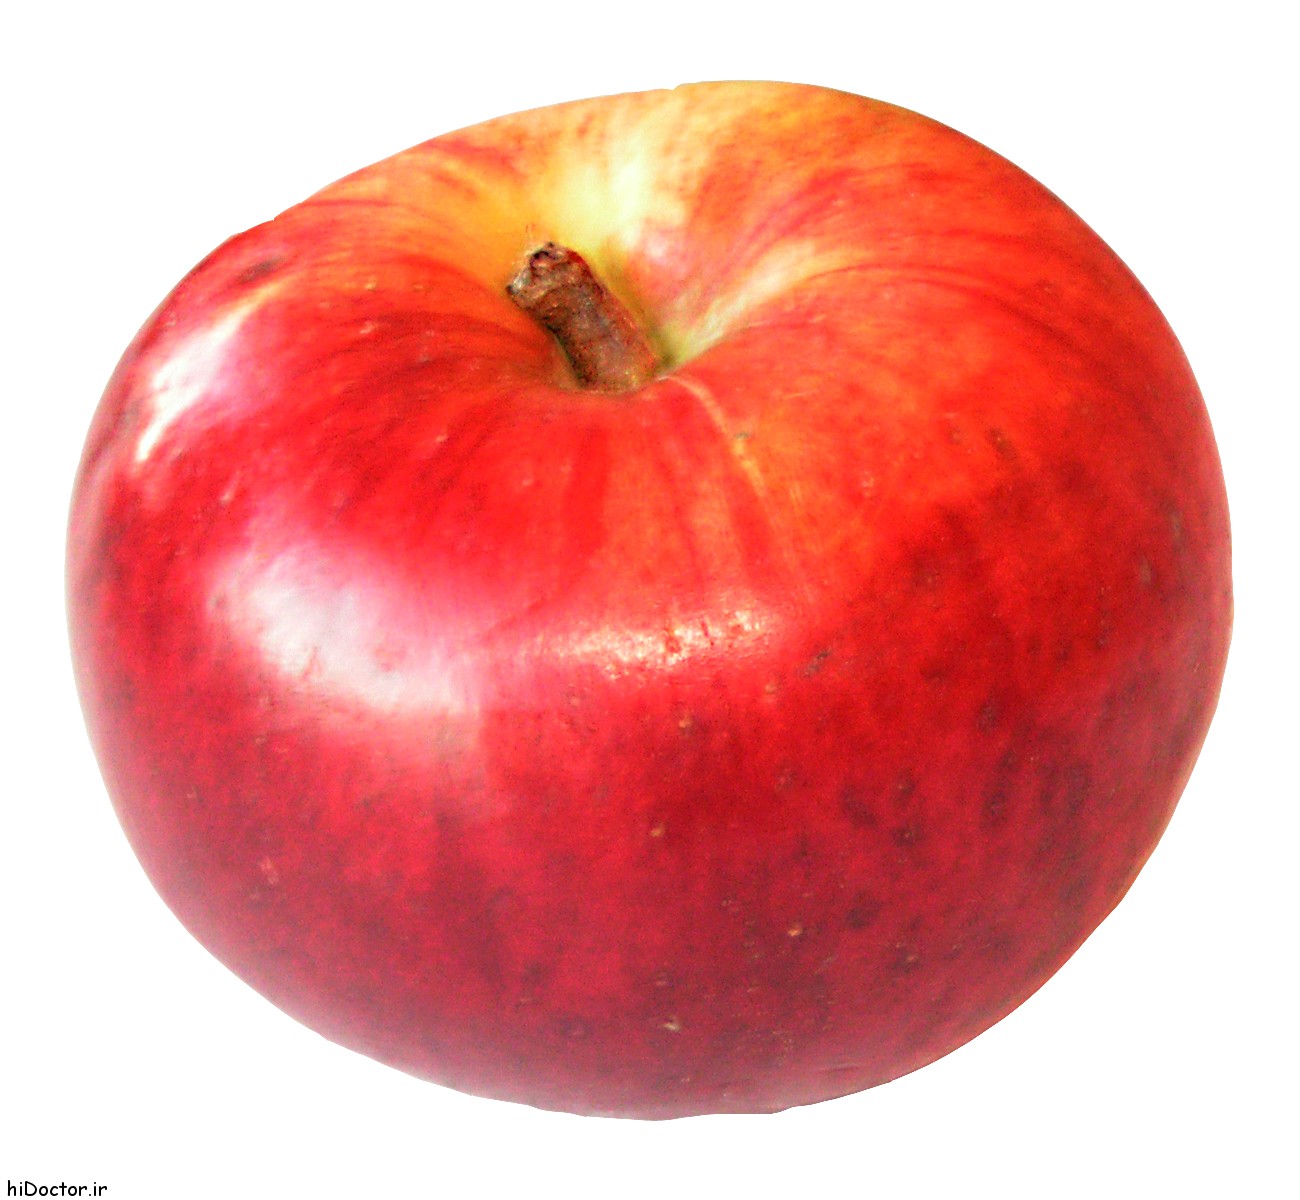 عکس های میوه سیب - نماد معروف سلامتی